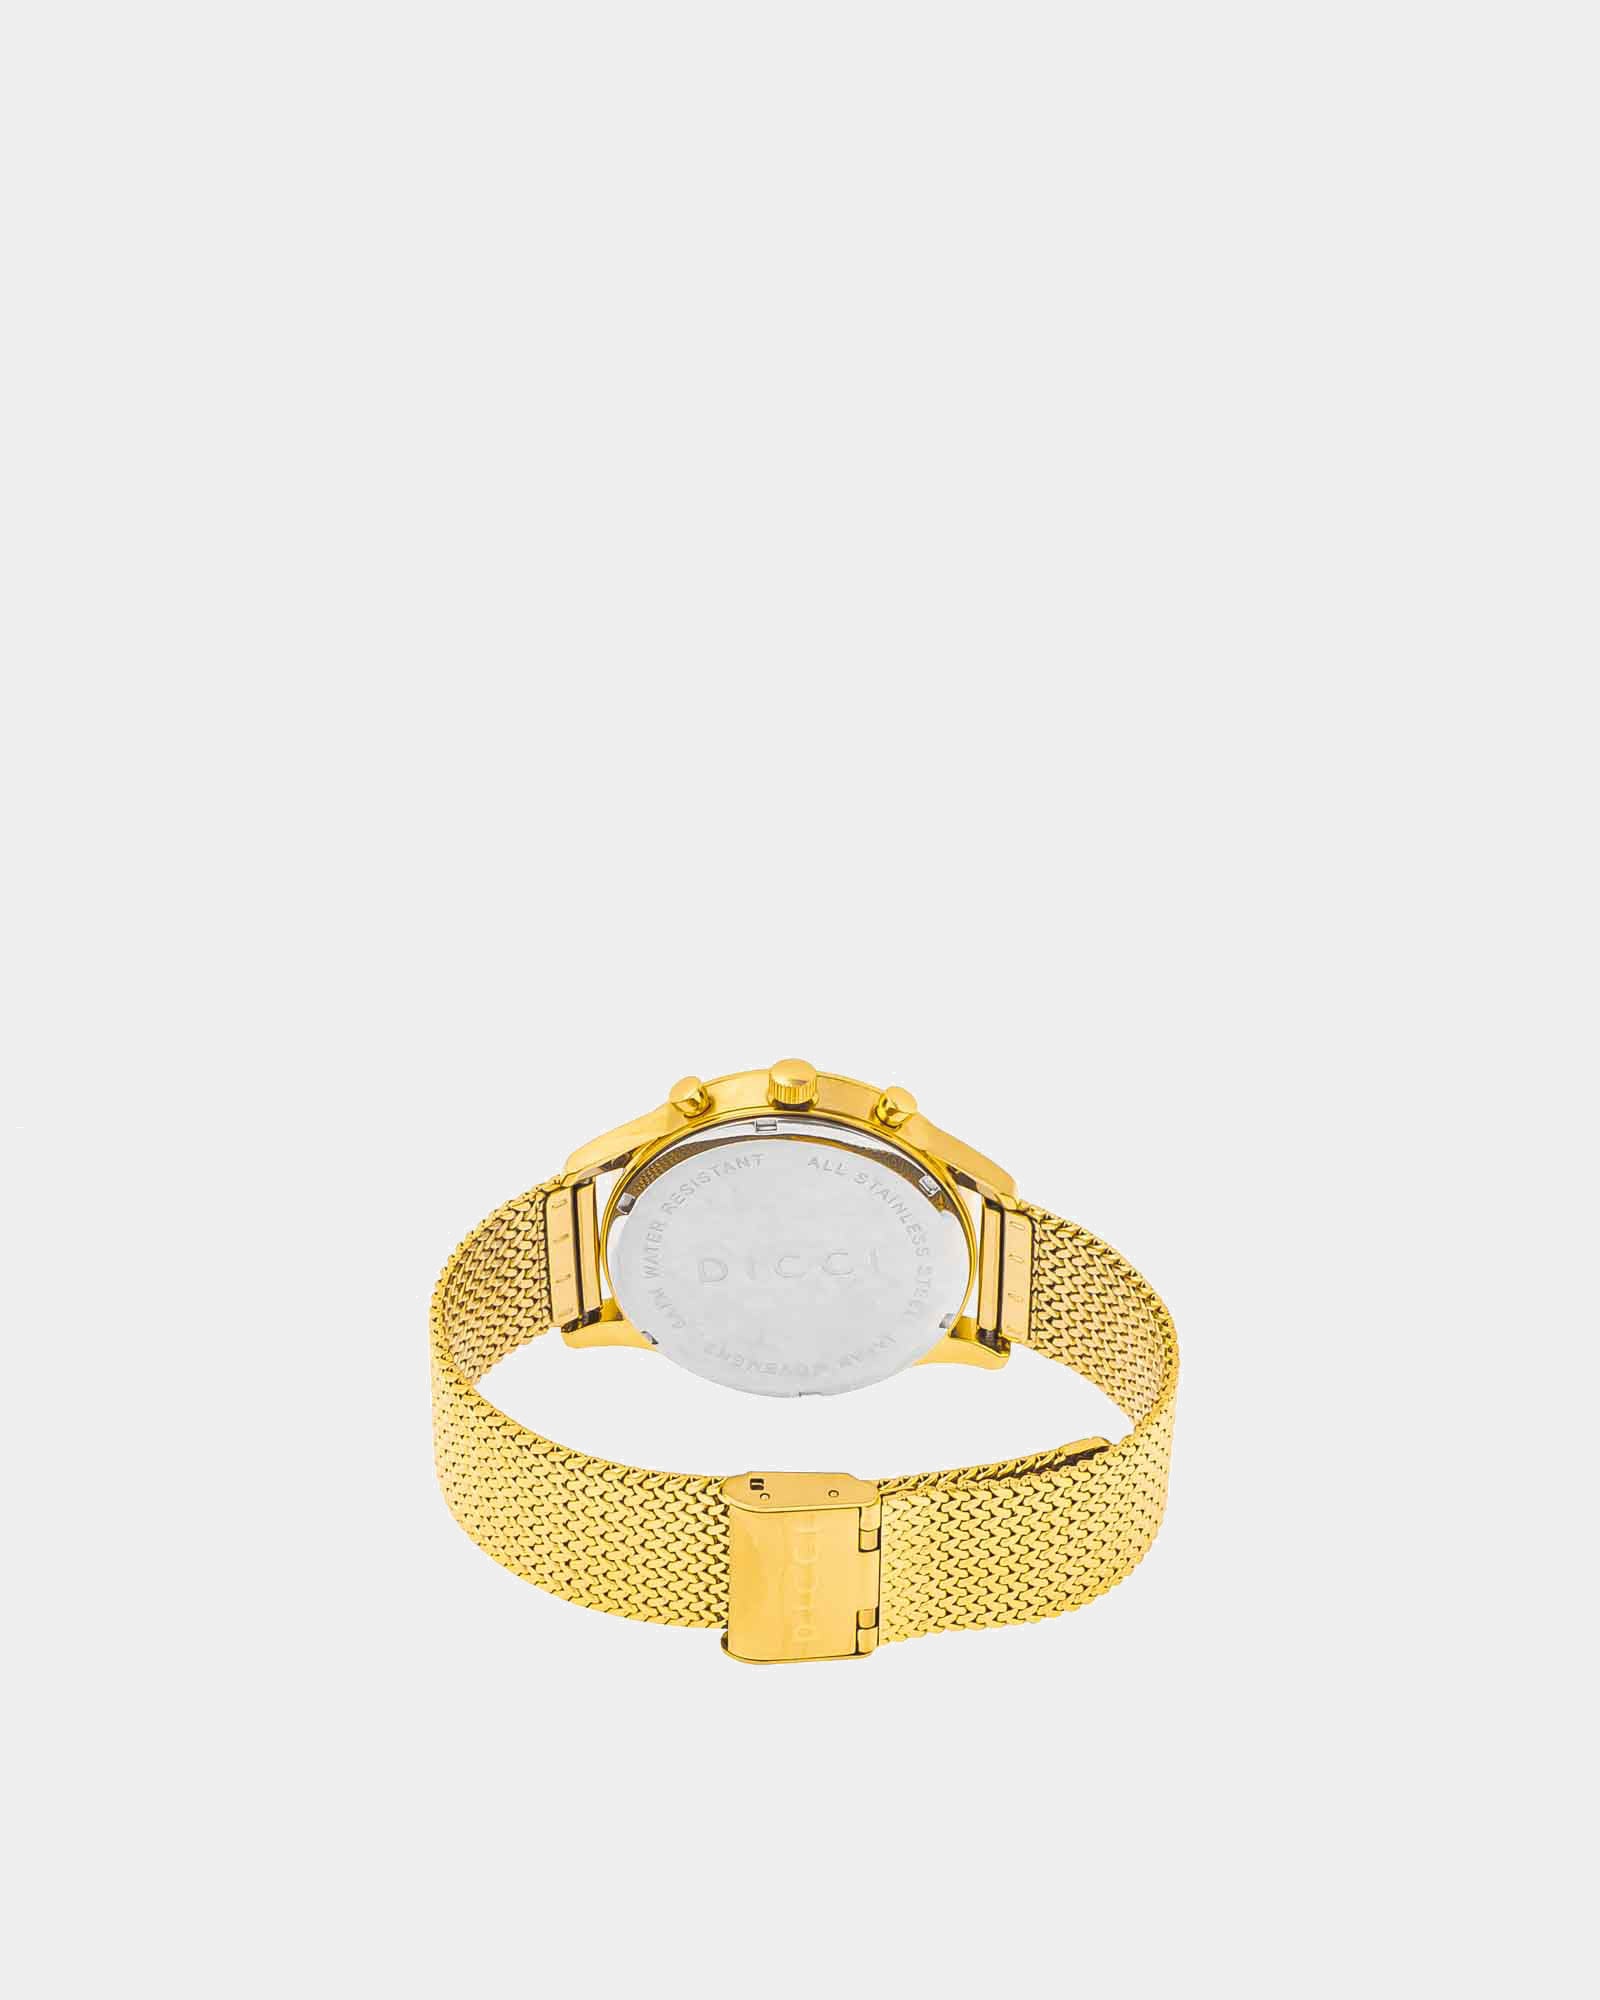 Chronometer - Relógio c/ mostrador azul com bracelete dourada - Joias Online - Dicci